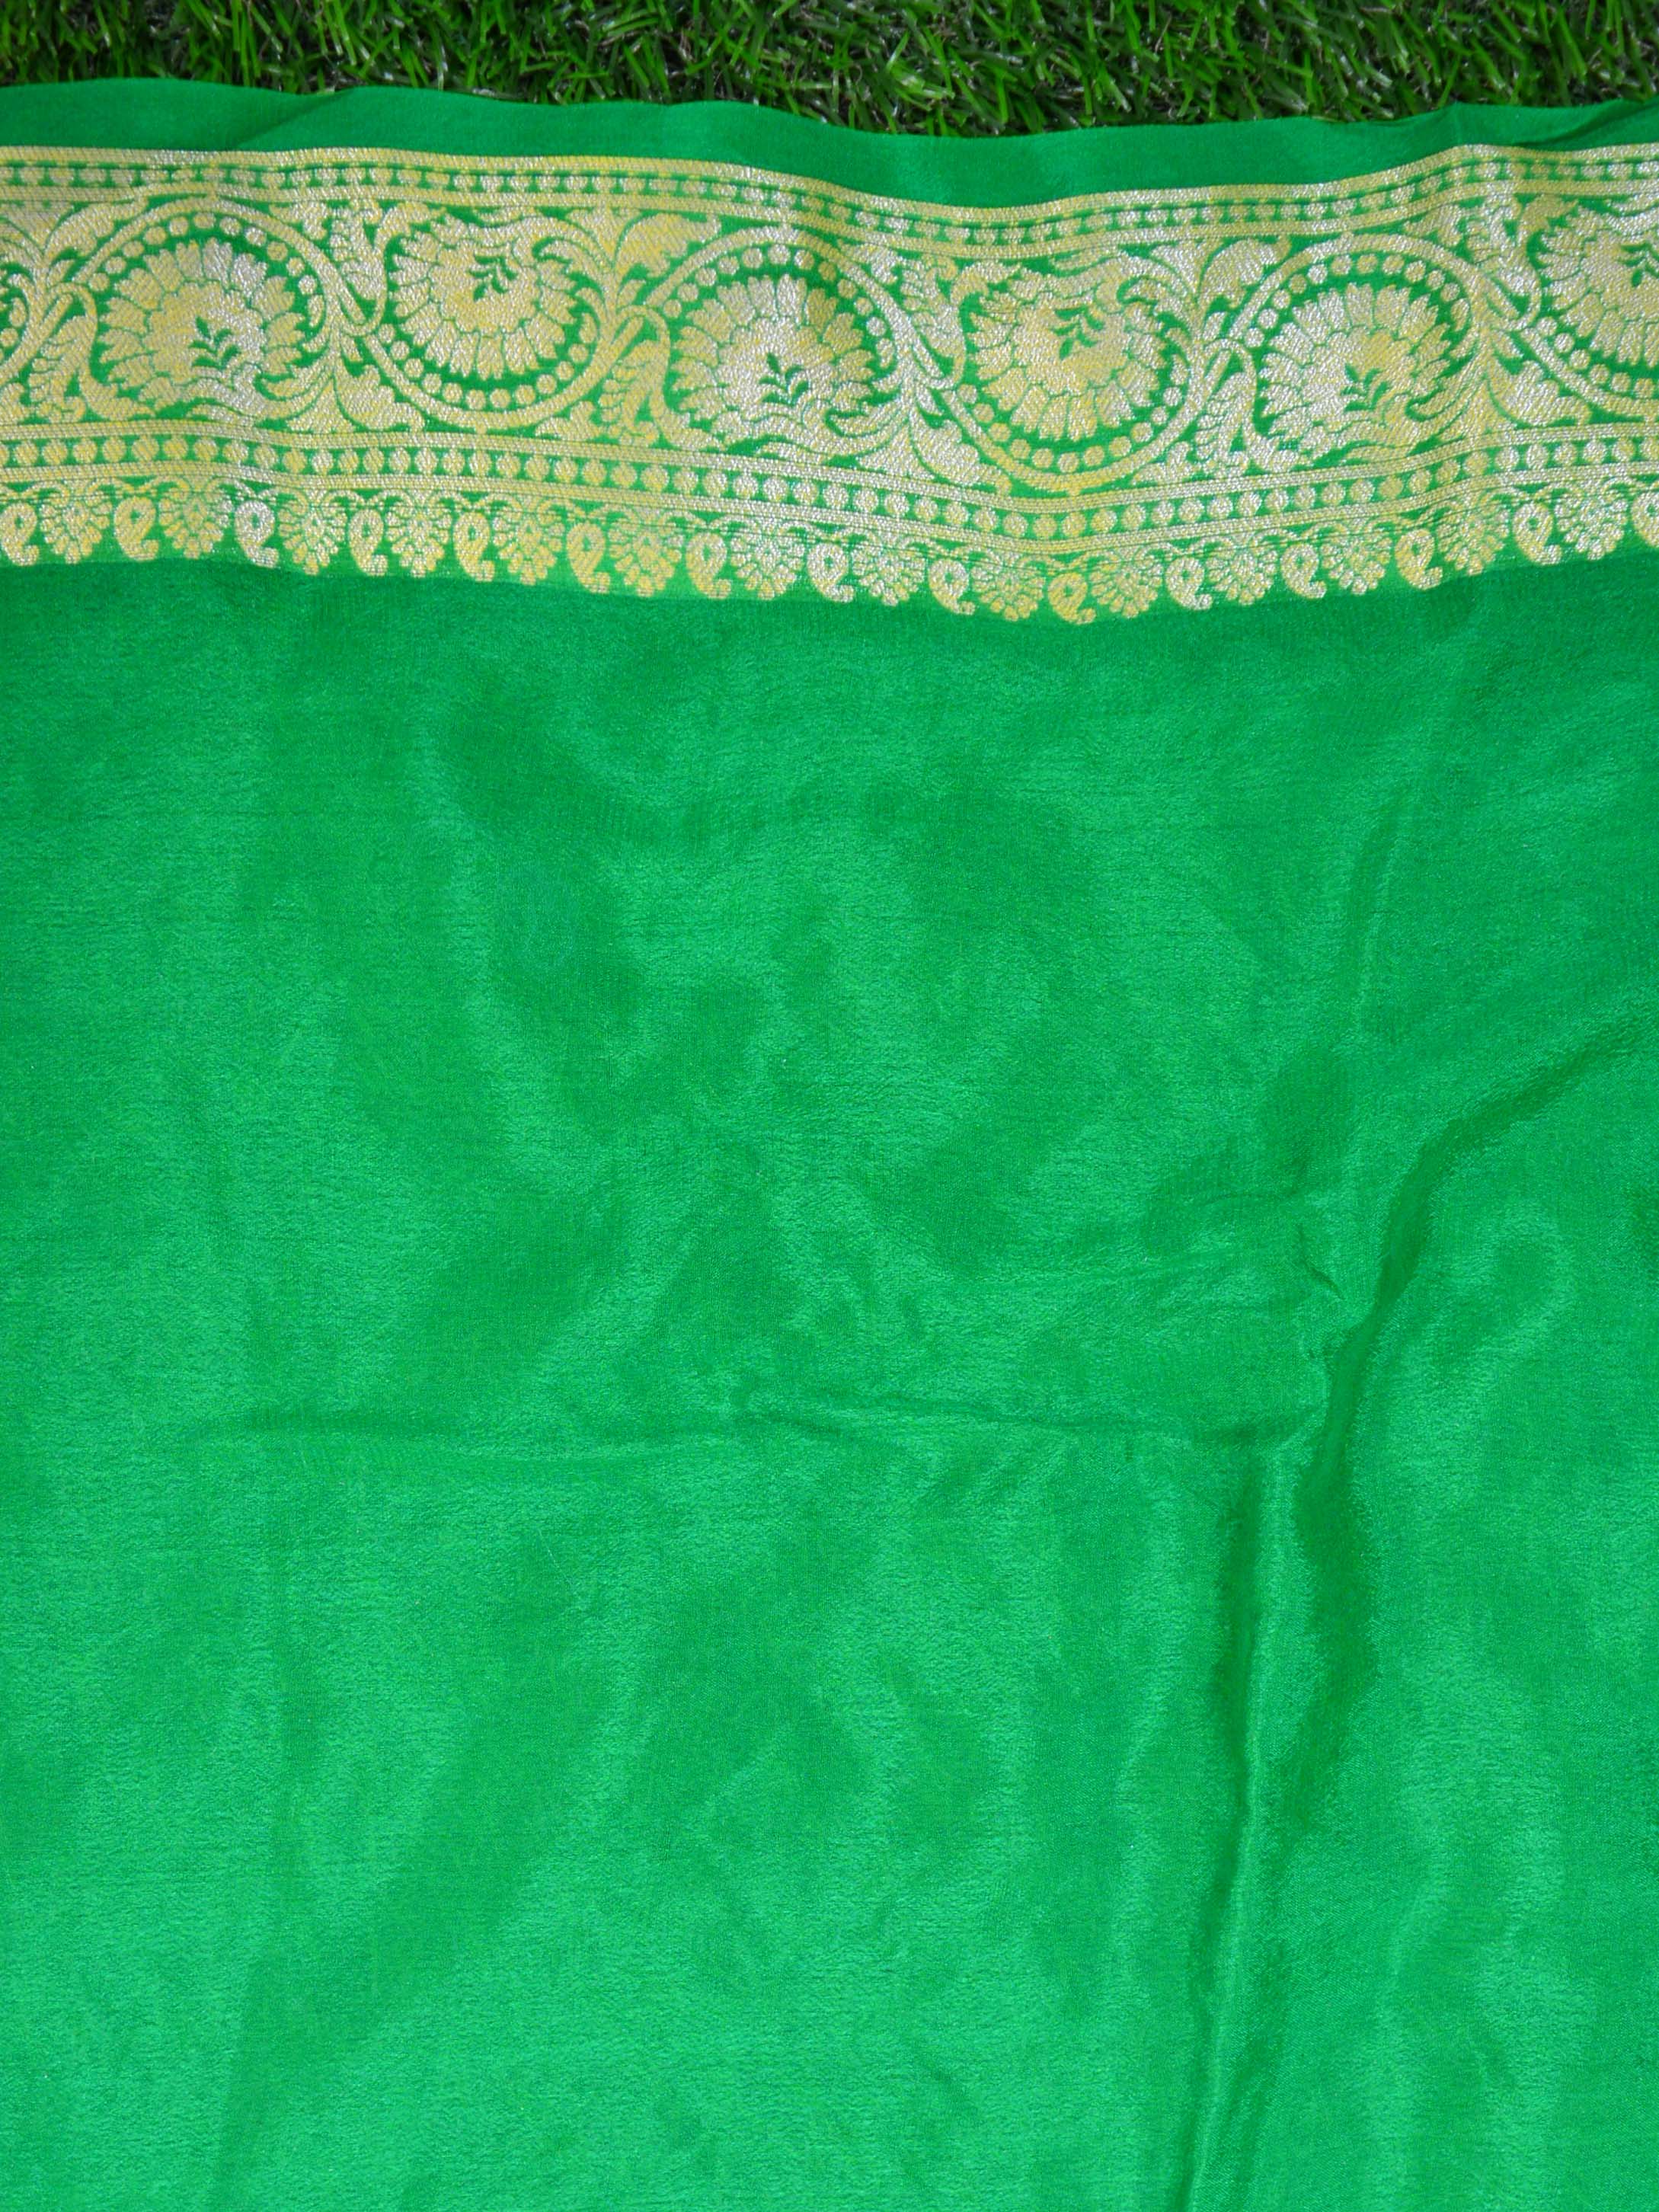 Banarasee Chiffon Zari Jaal Saree-Red & Green